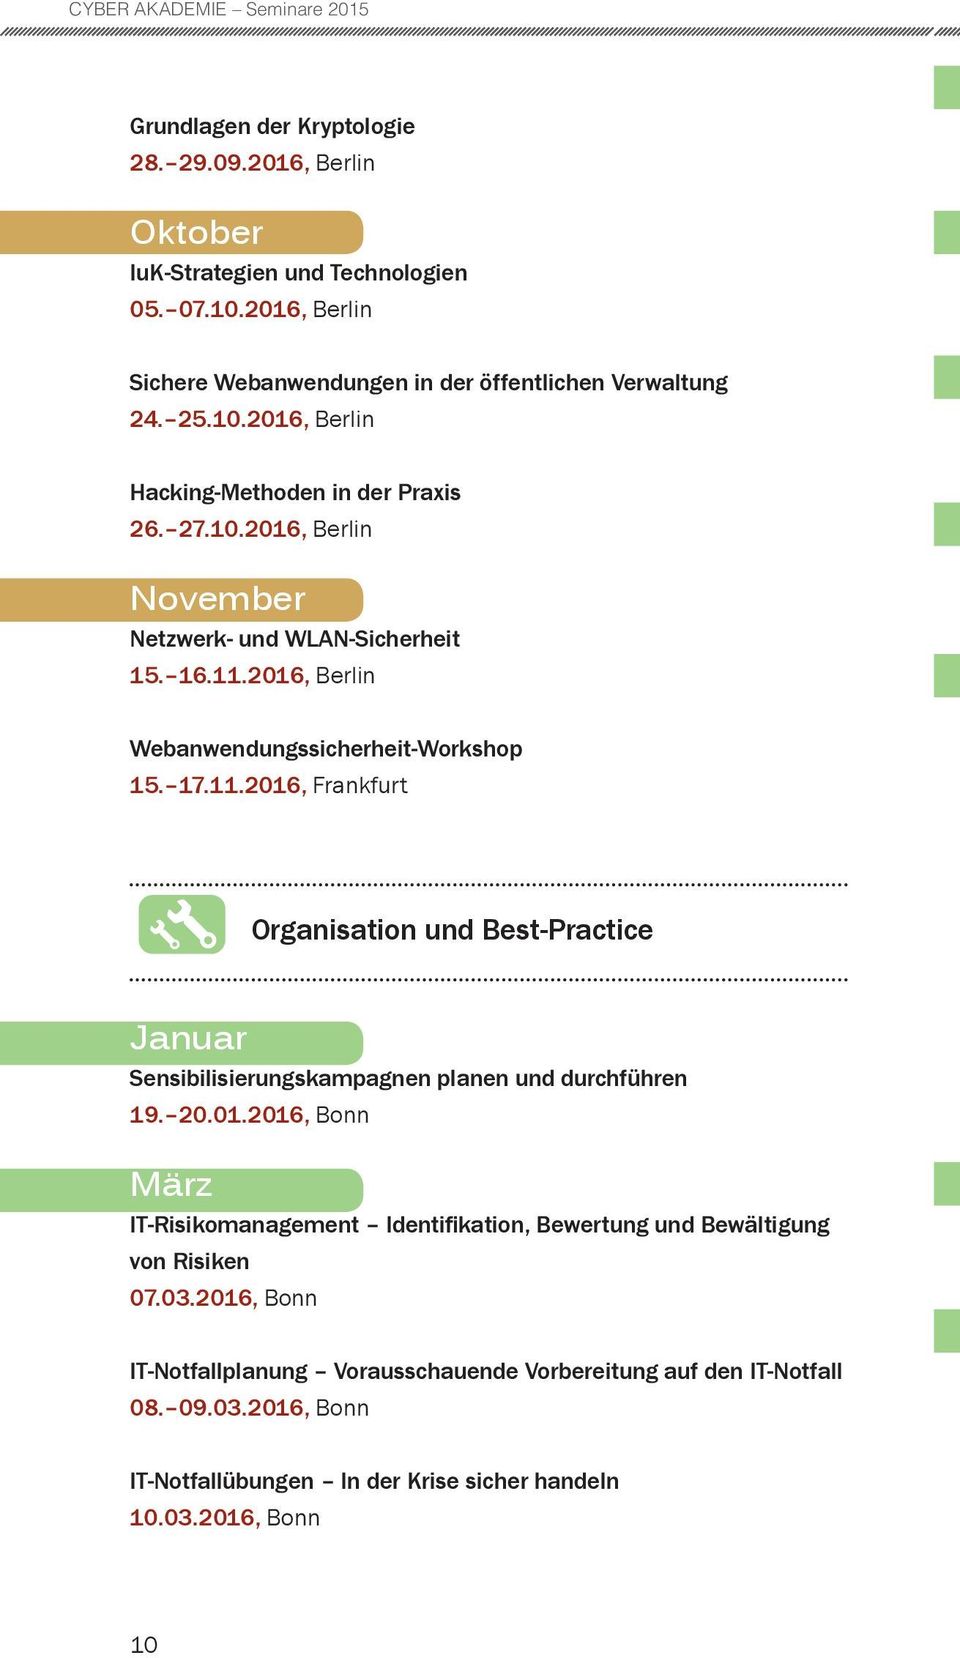 16.11.2016, Berlin Webanwendungssicherheit-Workshop 15. 17.11.2016, Frankfurt Organisation und Best-Practice Januar Sensibilisierungskampagnen planen und durchführen 19. 20.01.2016, Bonn März IT-Risikomanagement Identifikation, Bewertung und Bewältigung von Risiken 07.